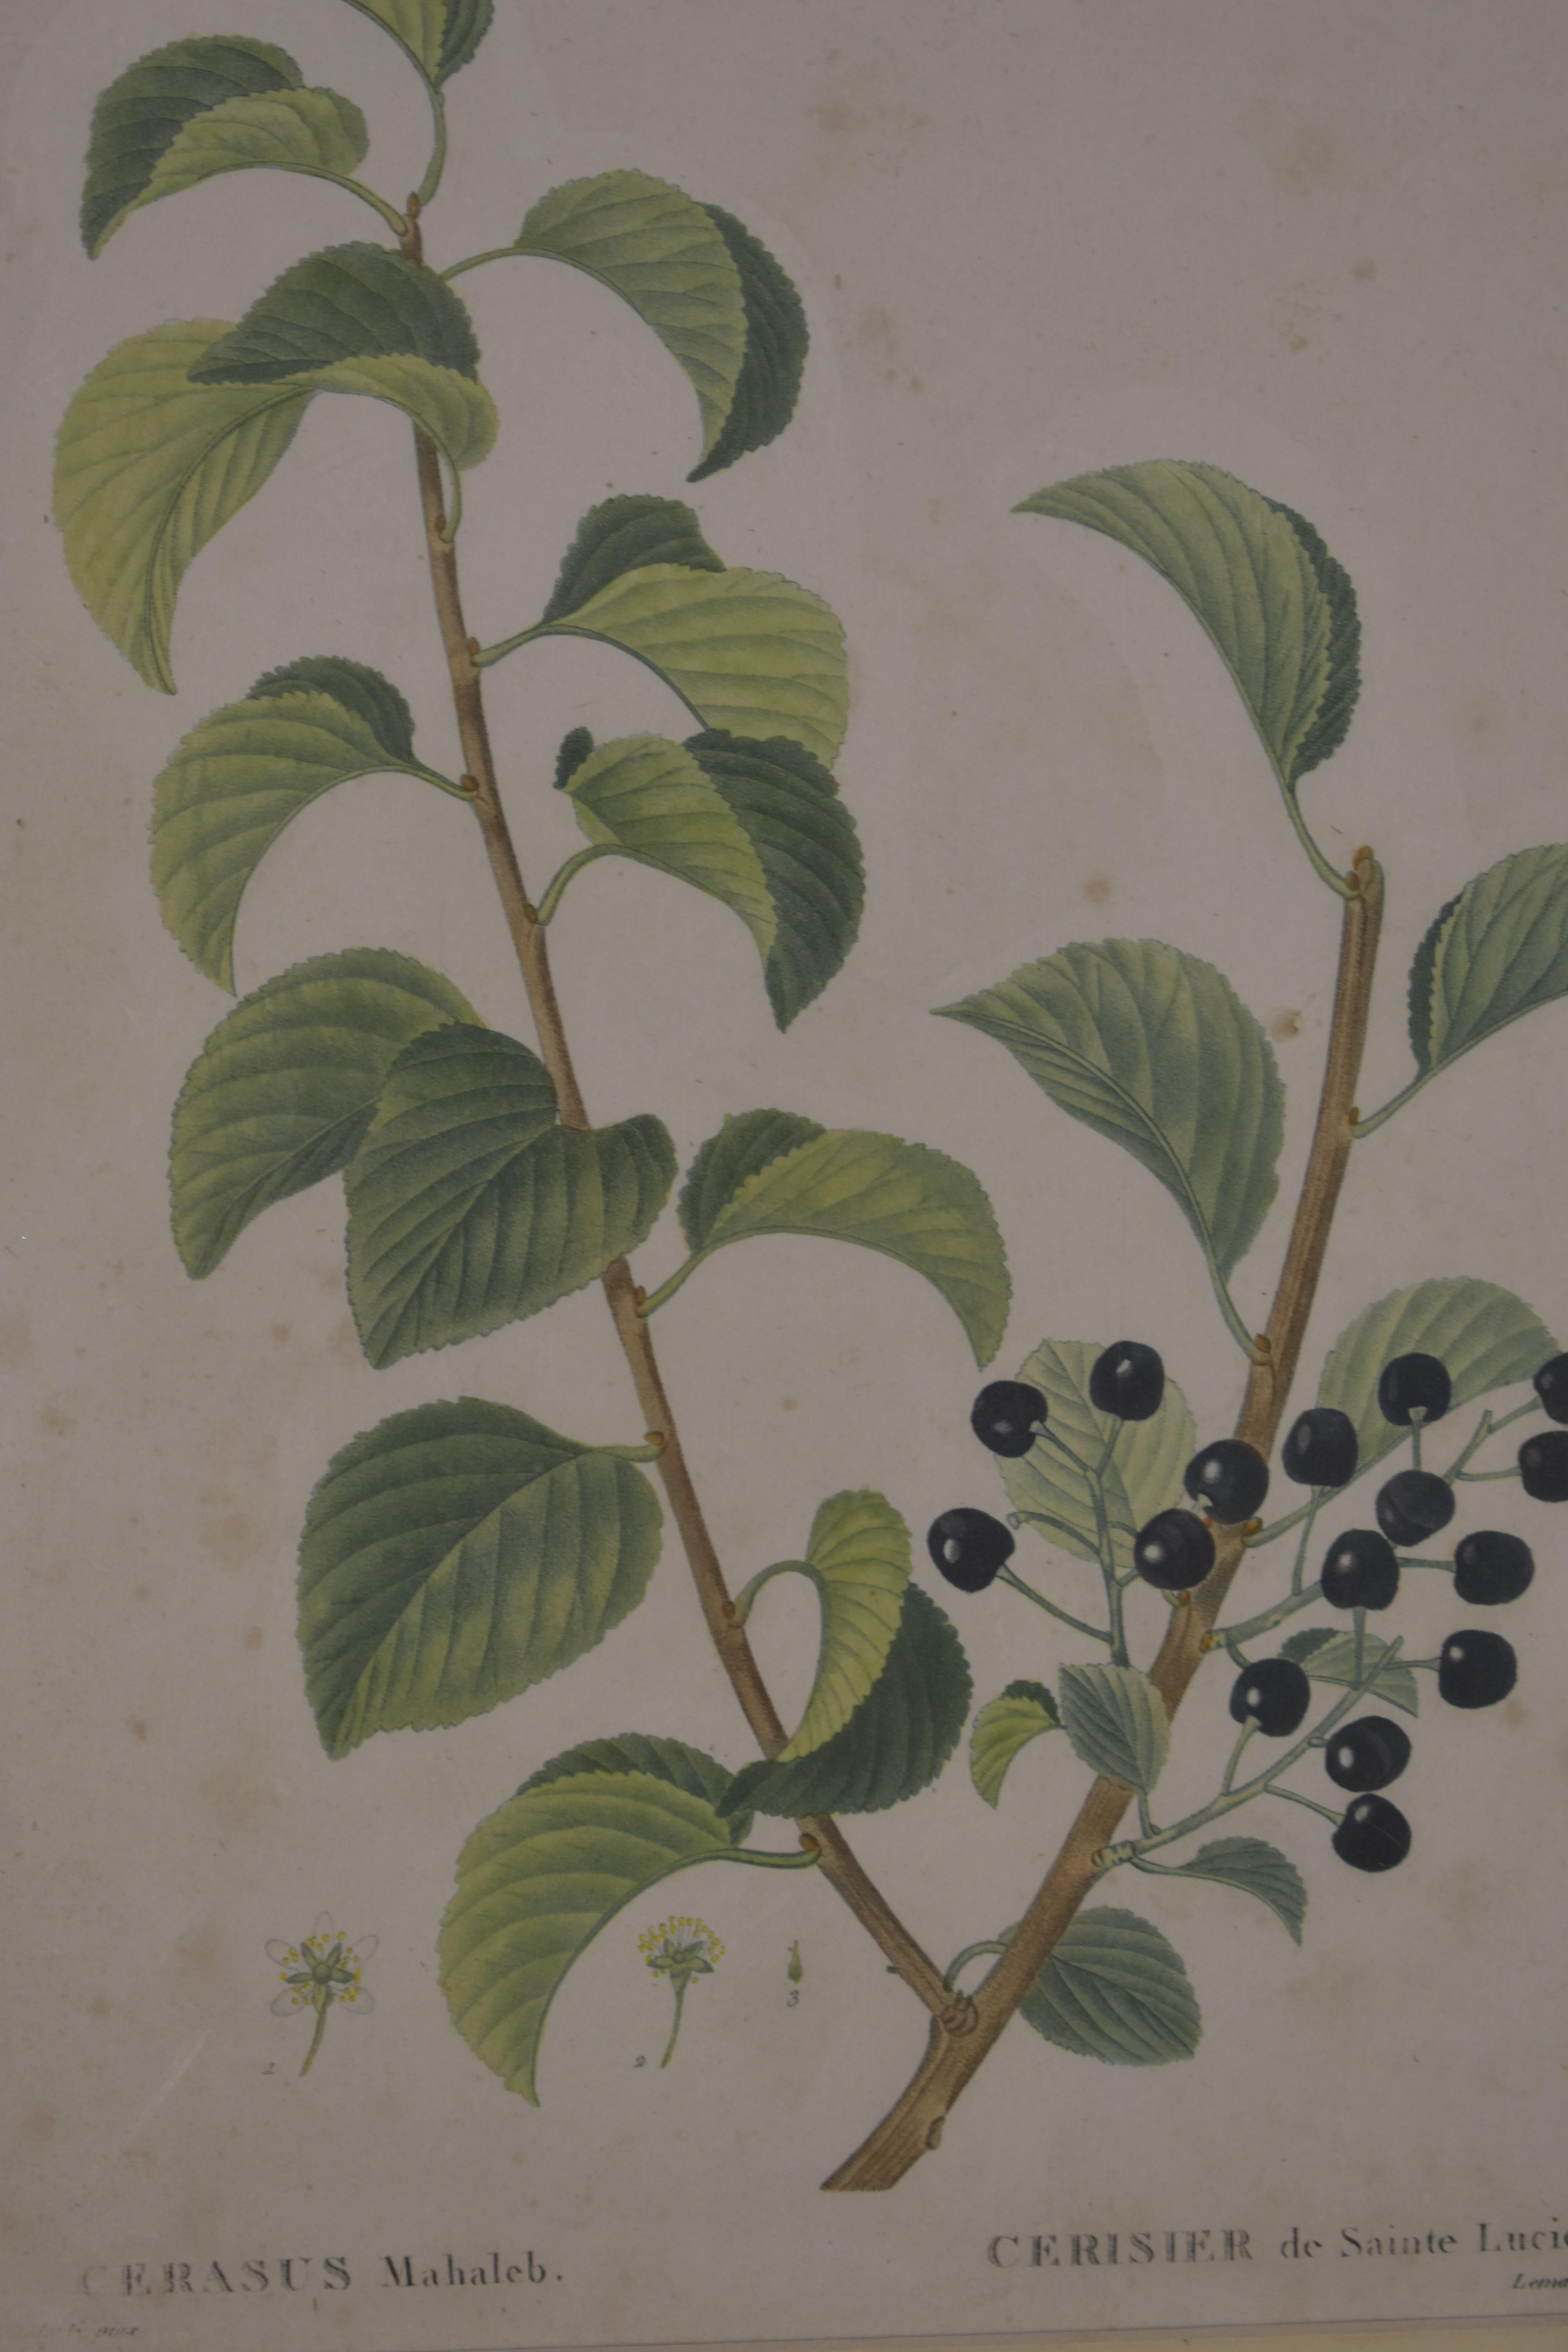 Impression botanique de Redoute, 18e siècle - Print de Pierre Joseph Redoute